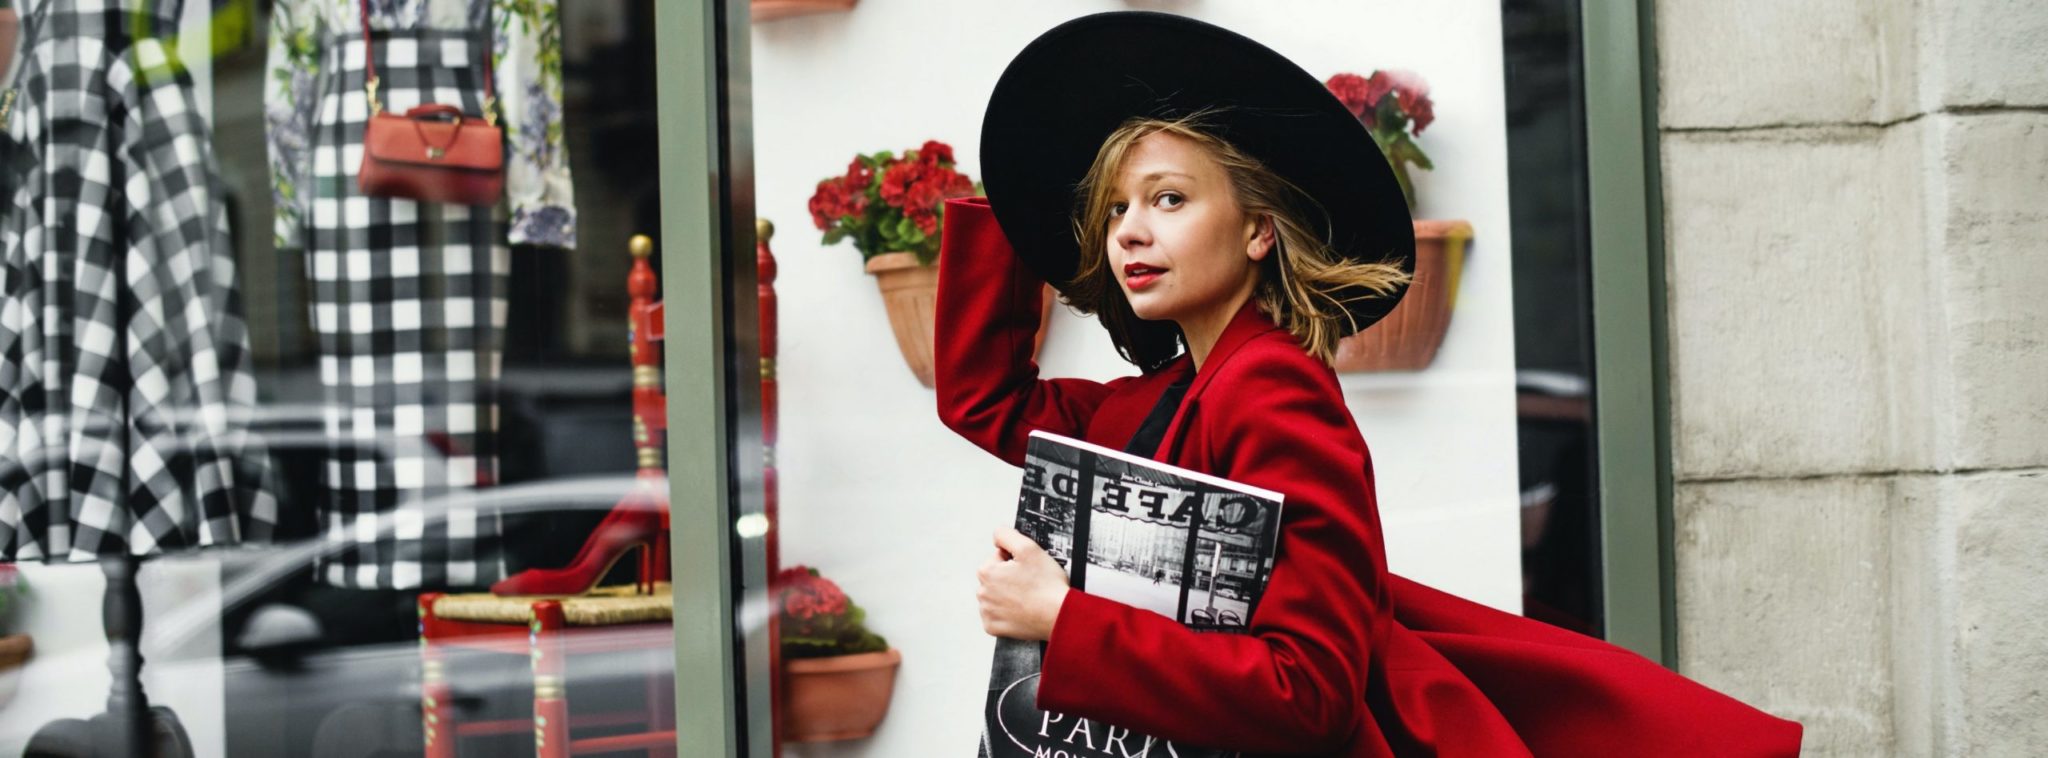 Nuori nainen kävelee vaateliikkeen näyteikkunan ohi ja katsoo kameraan punainen takki yllään ja musta lierihattu päässään, aikakauslehti kainalossa.